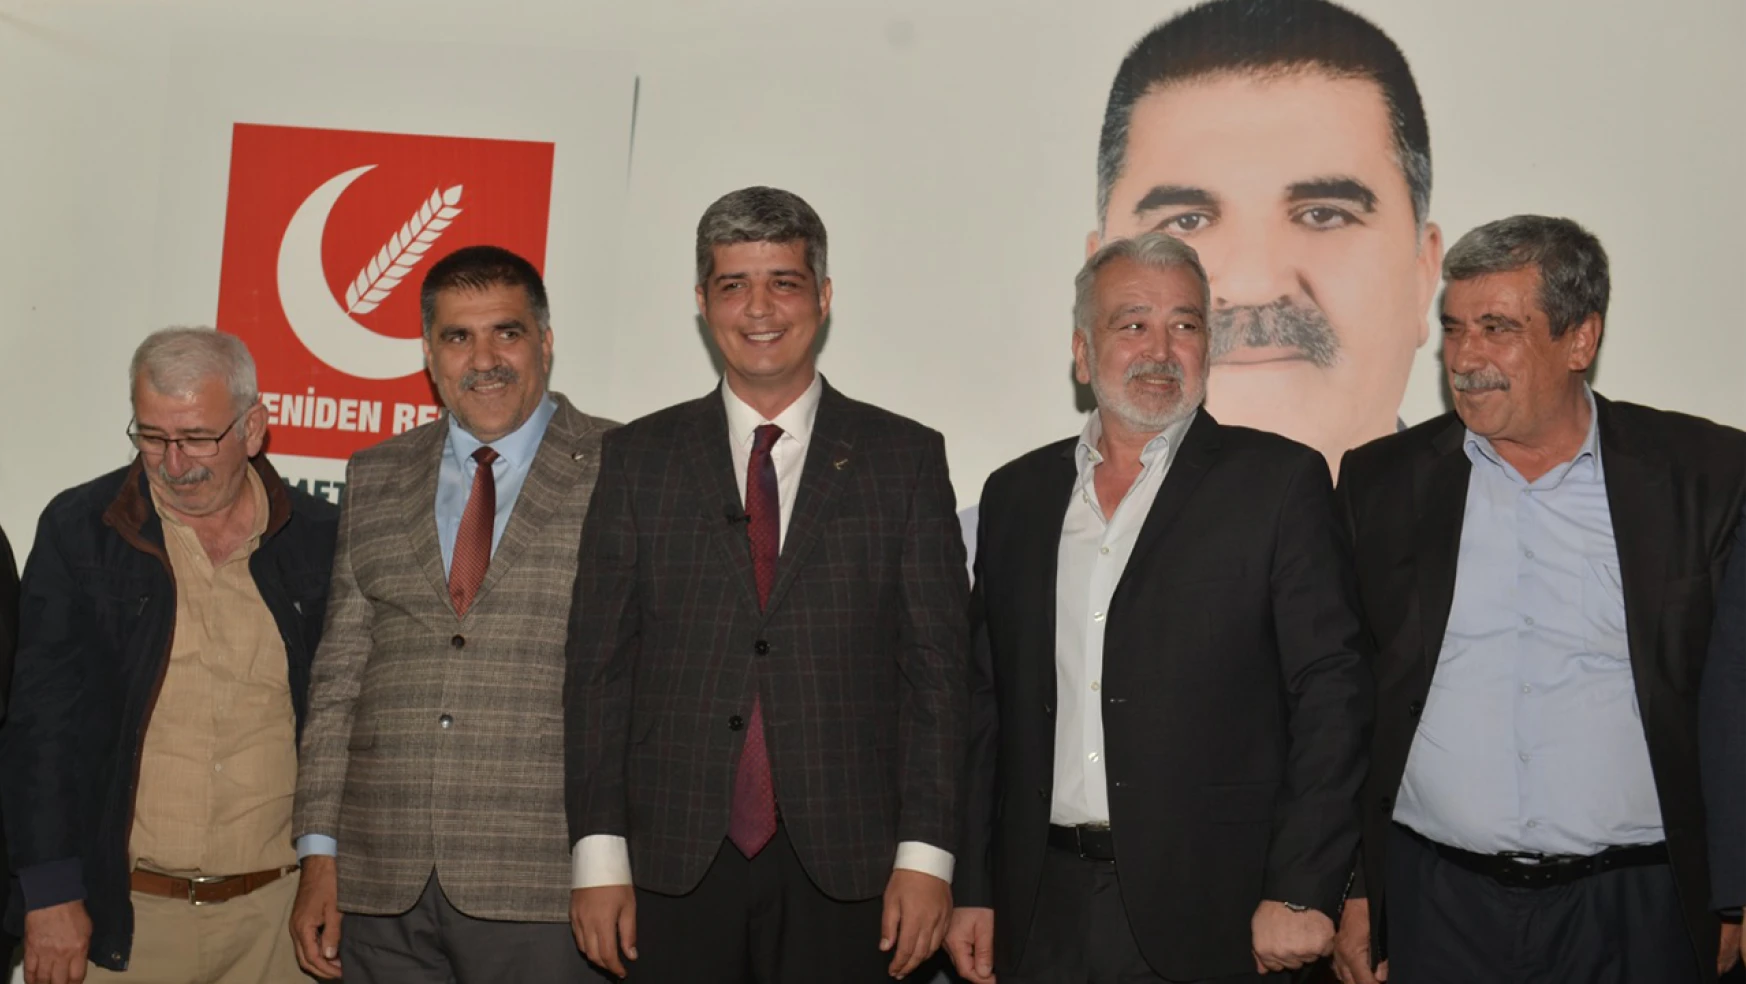 Türkoğlu'nda Yeniden Refah Partisine yoğun katılım